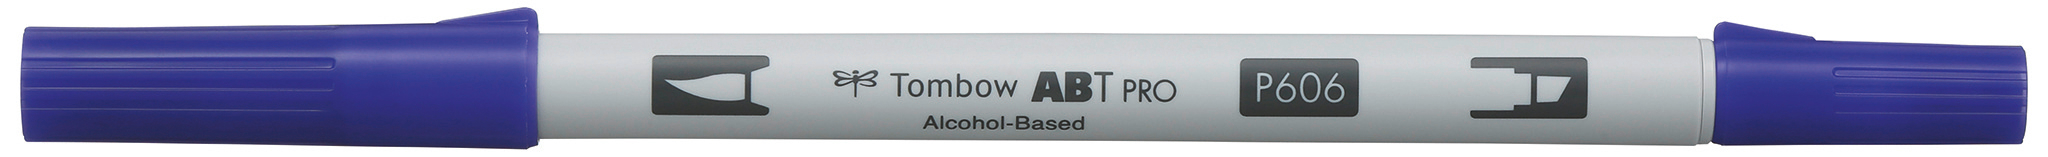 TOMBOW Dual Brush Pen ABT PRO ABTP-606 violet violet